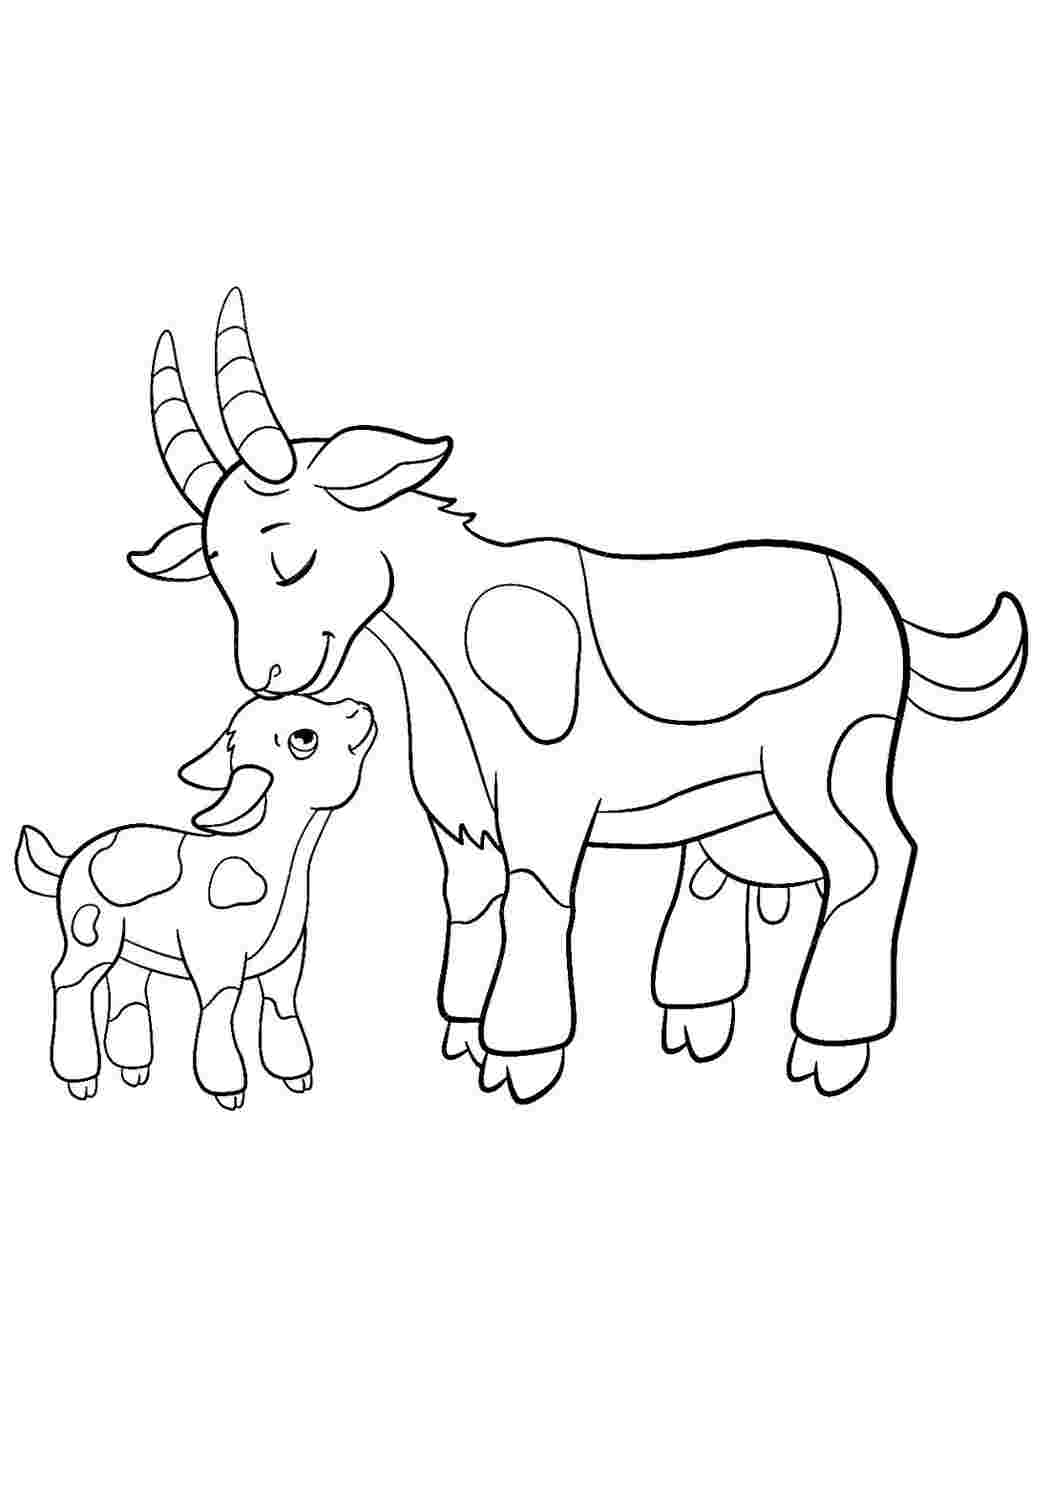 Раскраска Коза и козленок, скачать и распечатать раскраску раздела Животные и их детеныши